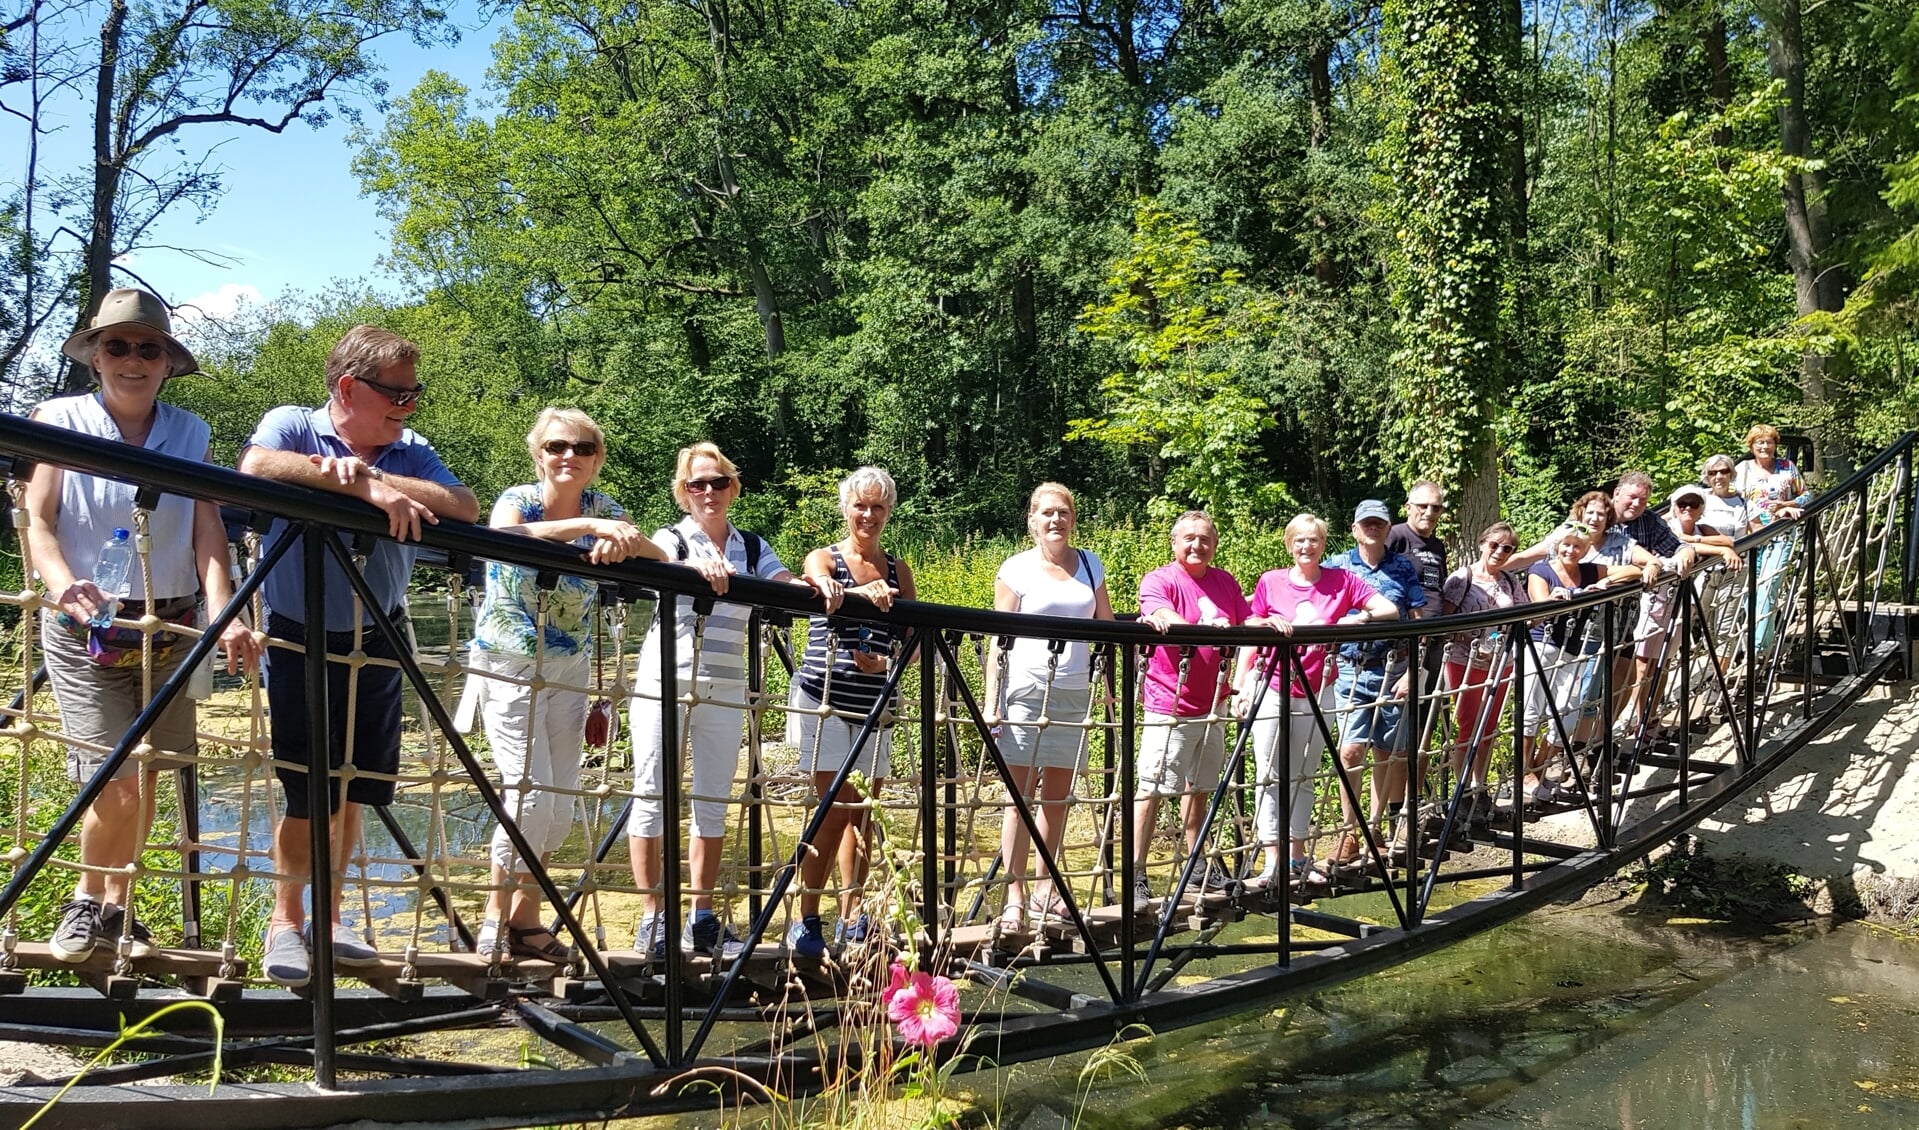 Besselink en Helmich in het rose wandelshirt van de gemeente worden geflankeerd door de medewandelaars op de wiebelige touwbrug in het Hertenbosch. Foto: Alice Rouwhorst